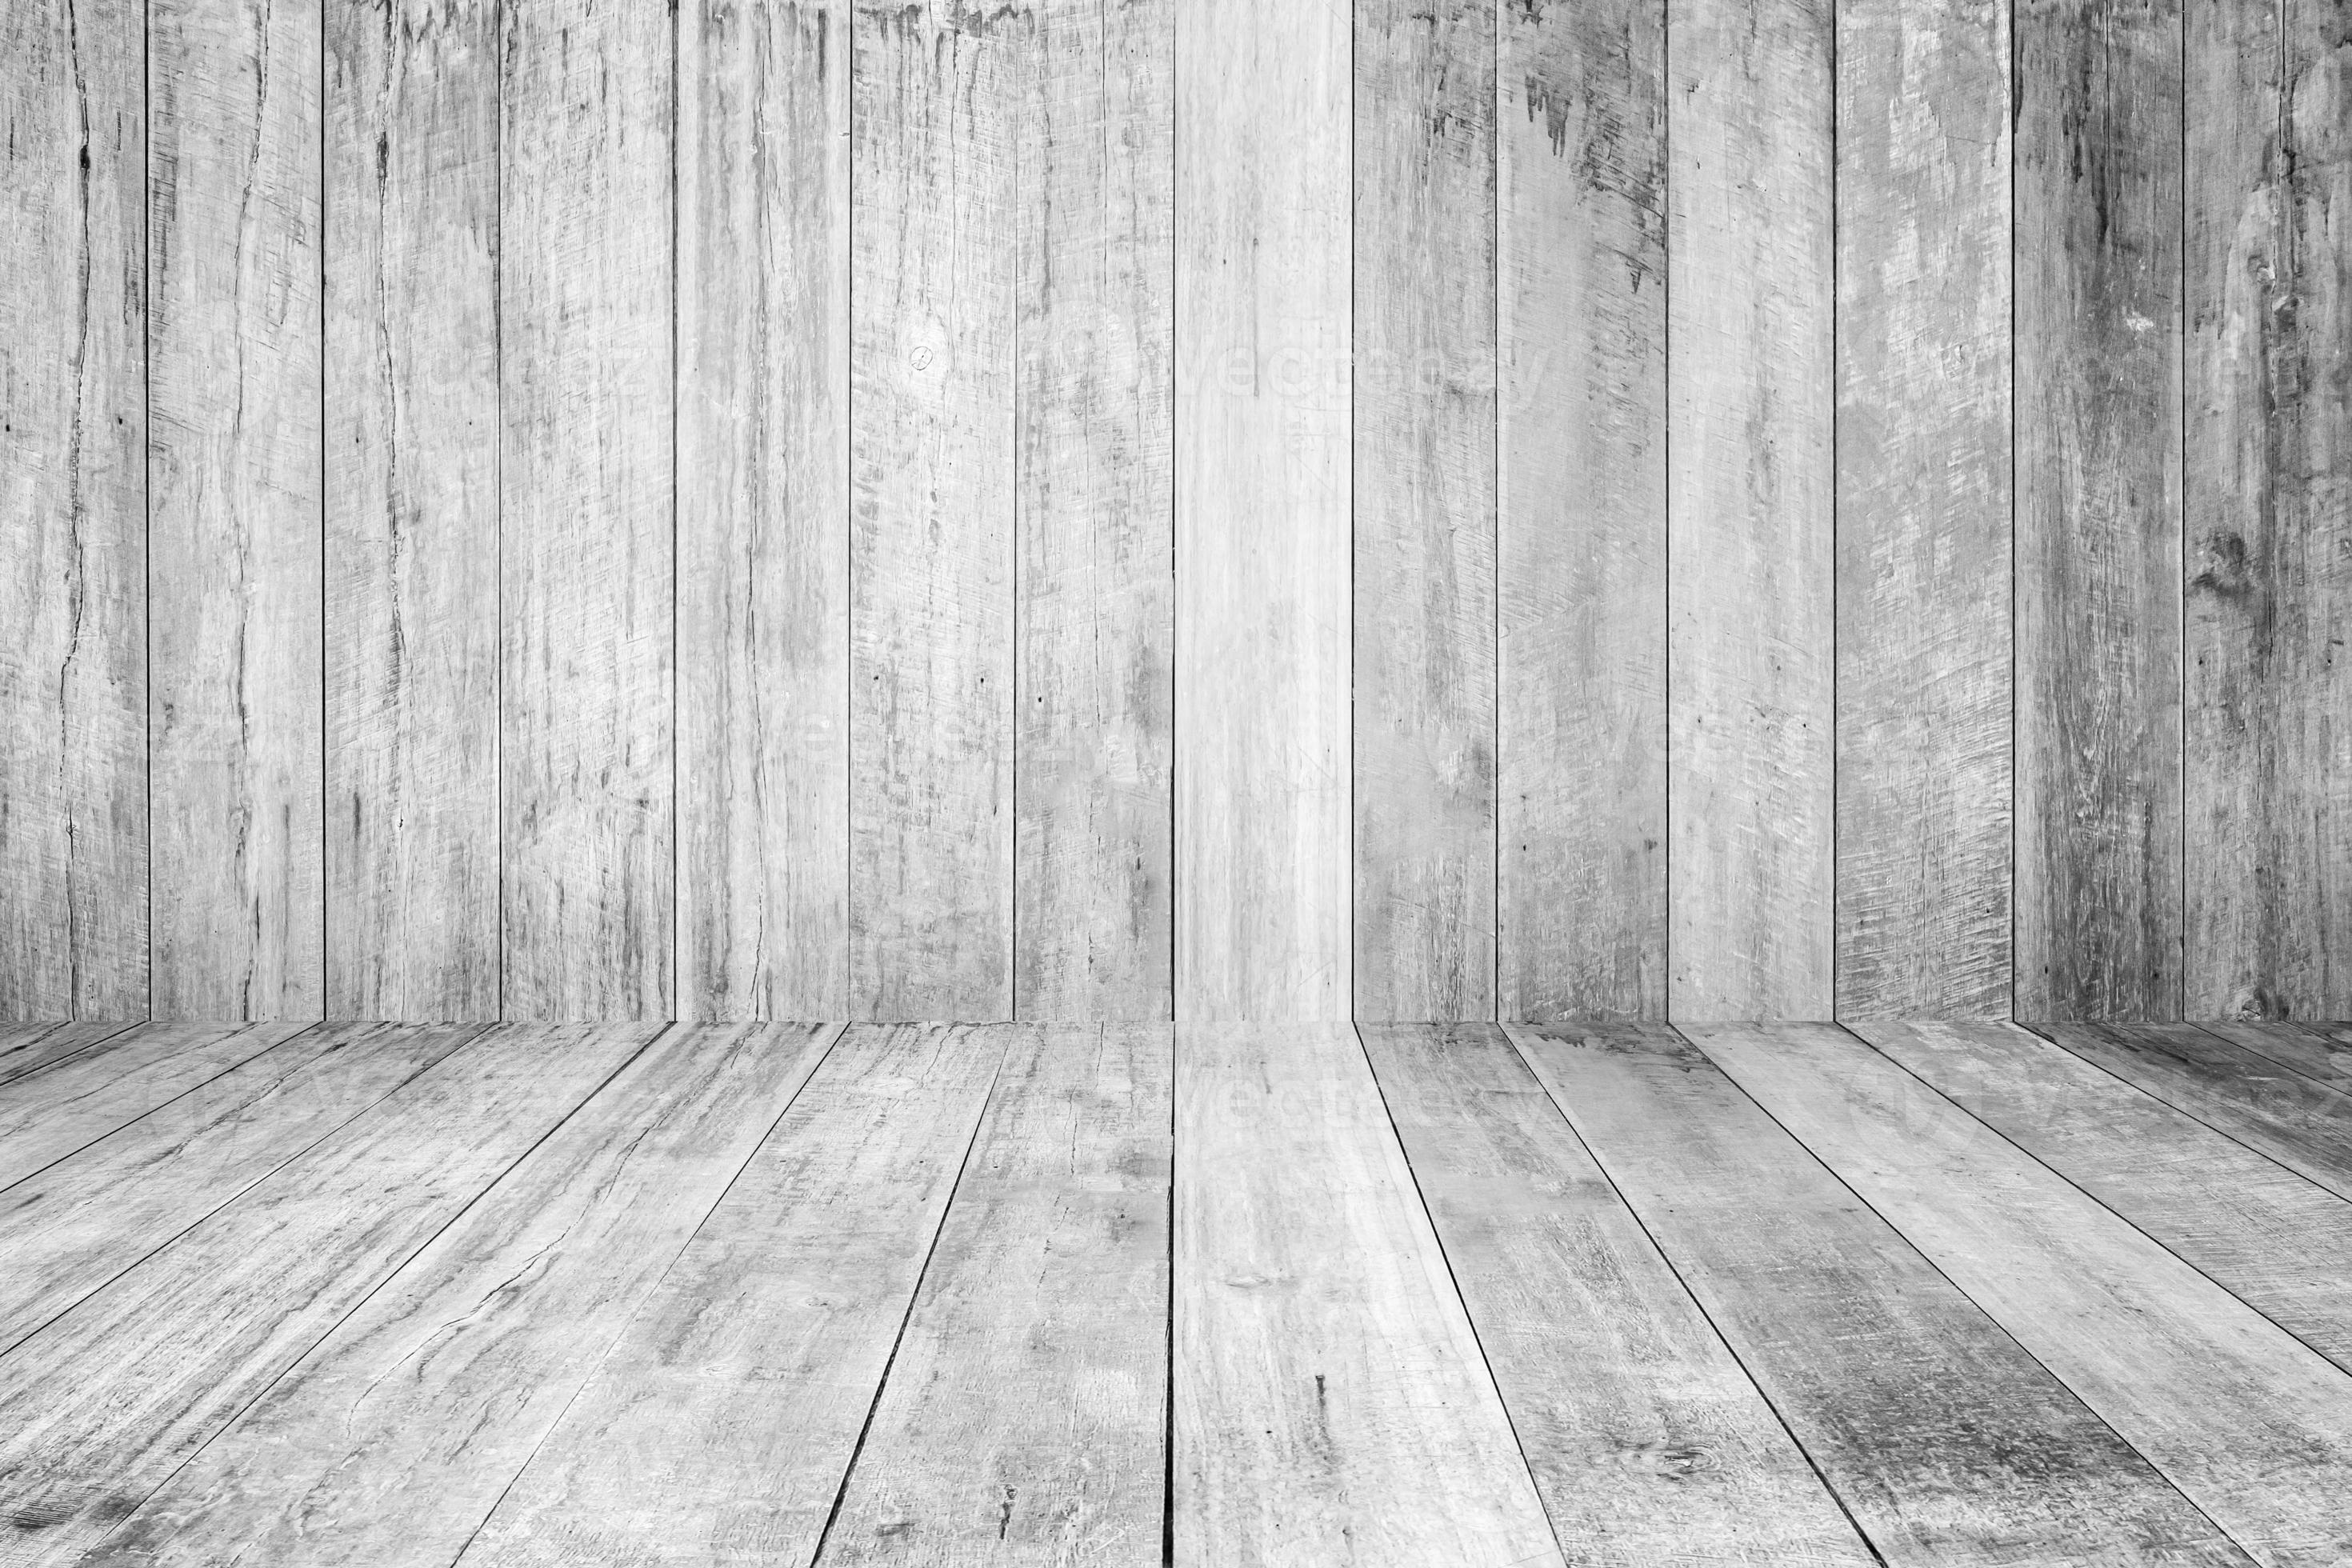 Plicht ledematen Postbode leeg wit houten planken muur perspectief verdieping kamer interieur  achtergrond 14219904 stockfoto bij Vecteezy